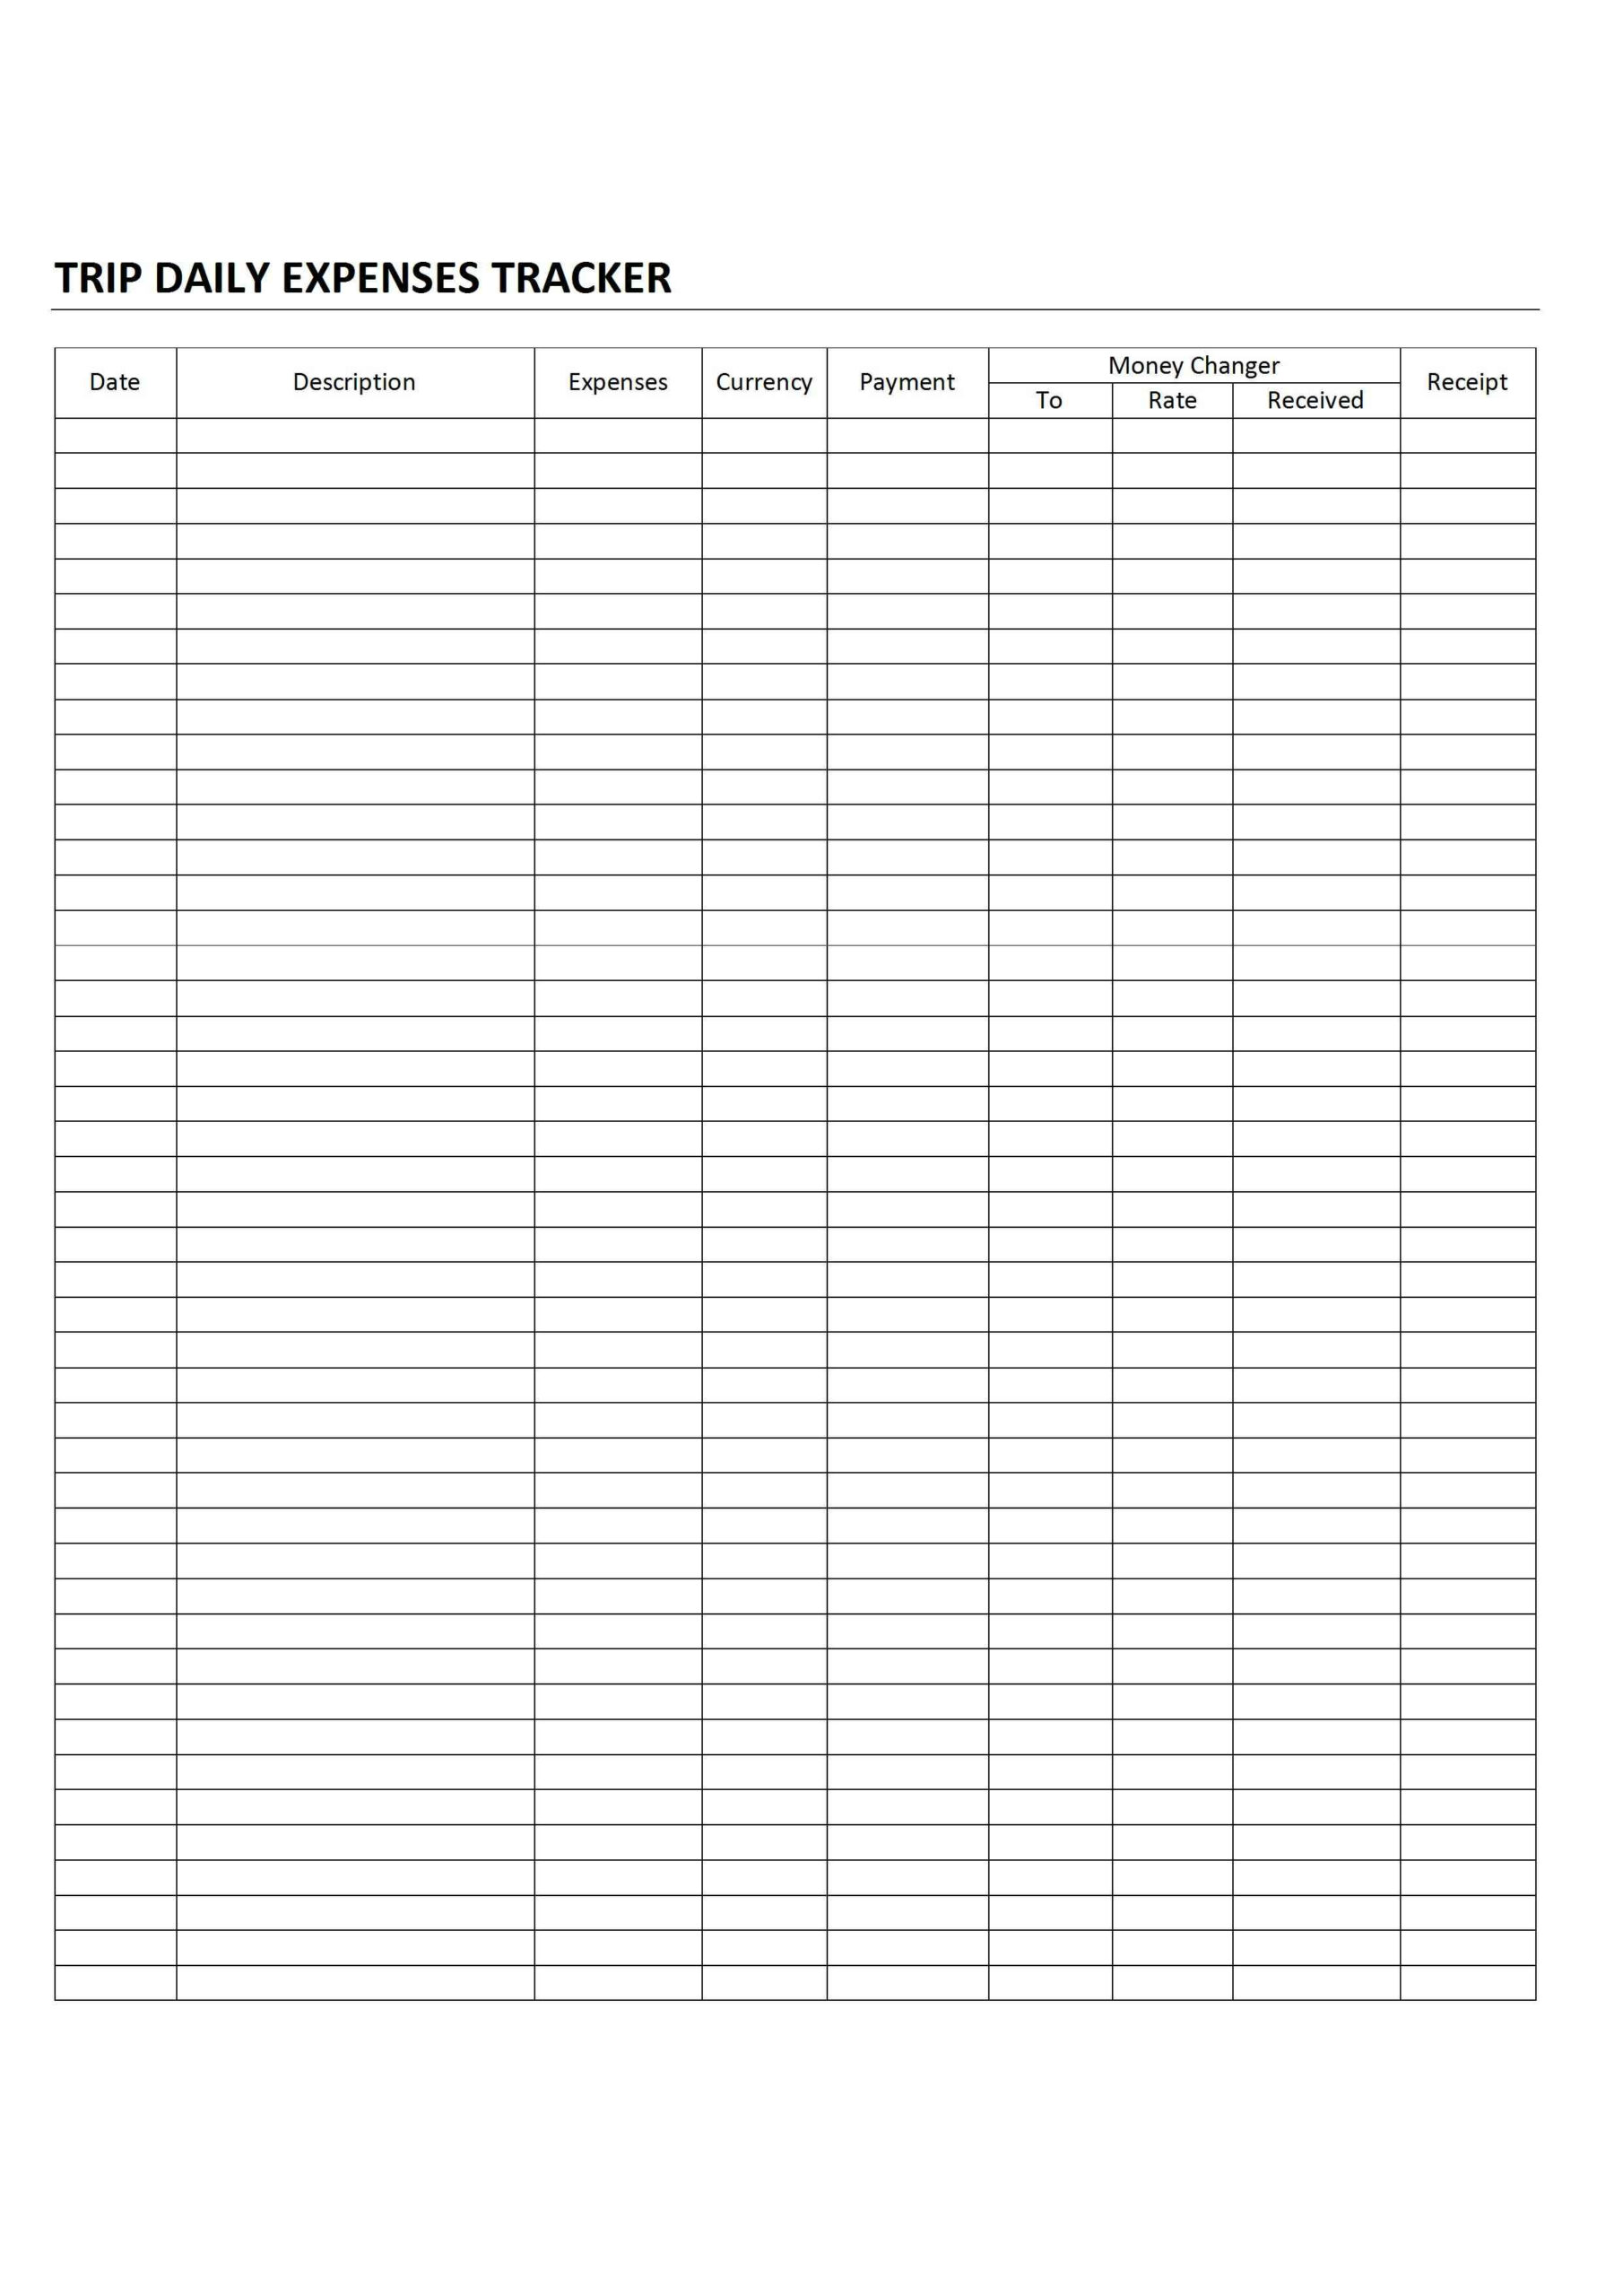 Daily Budget Worksheet Printable Printable Worksheets Wiring Diagrams